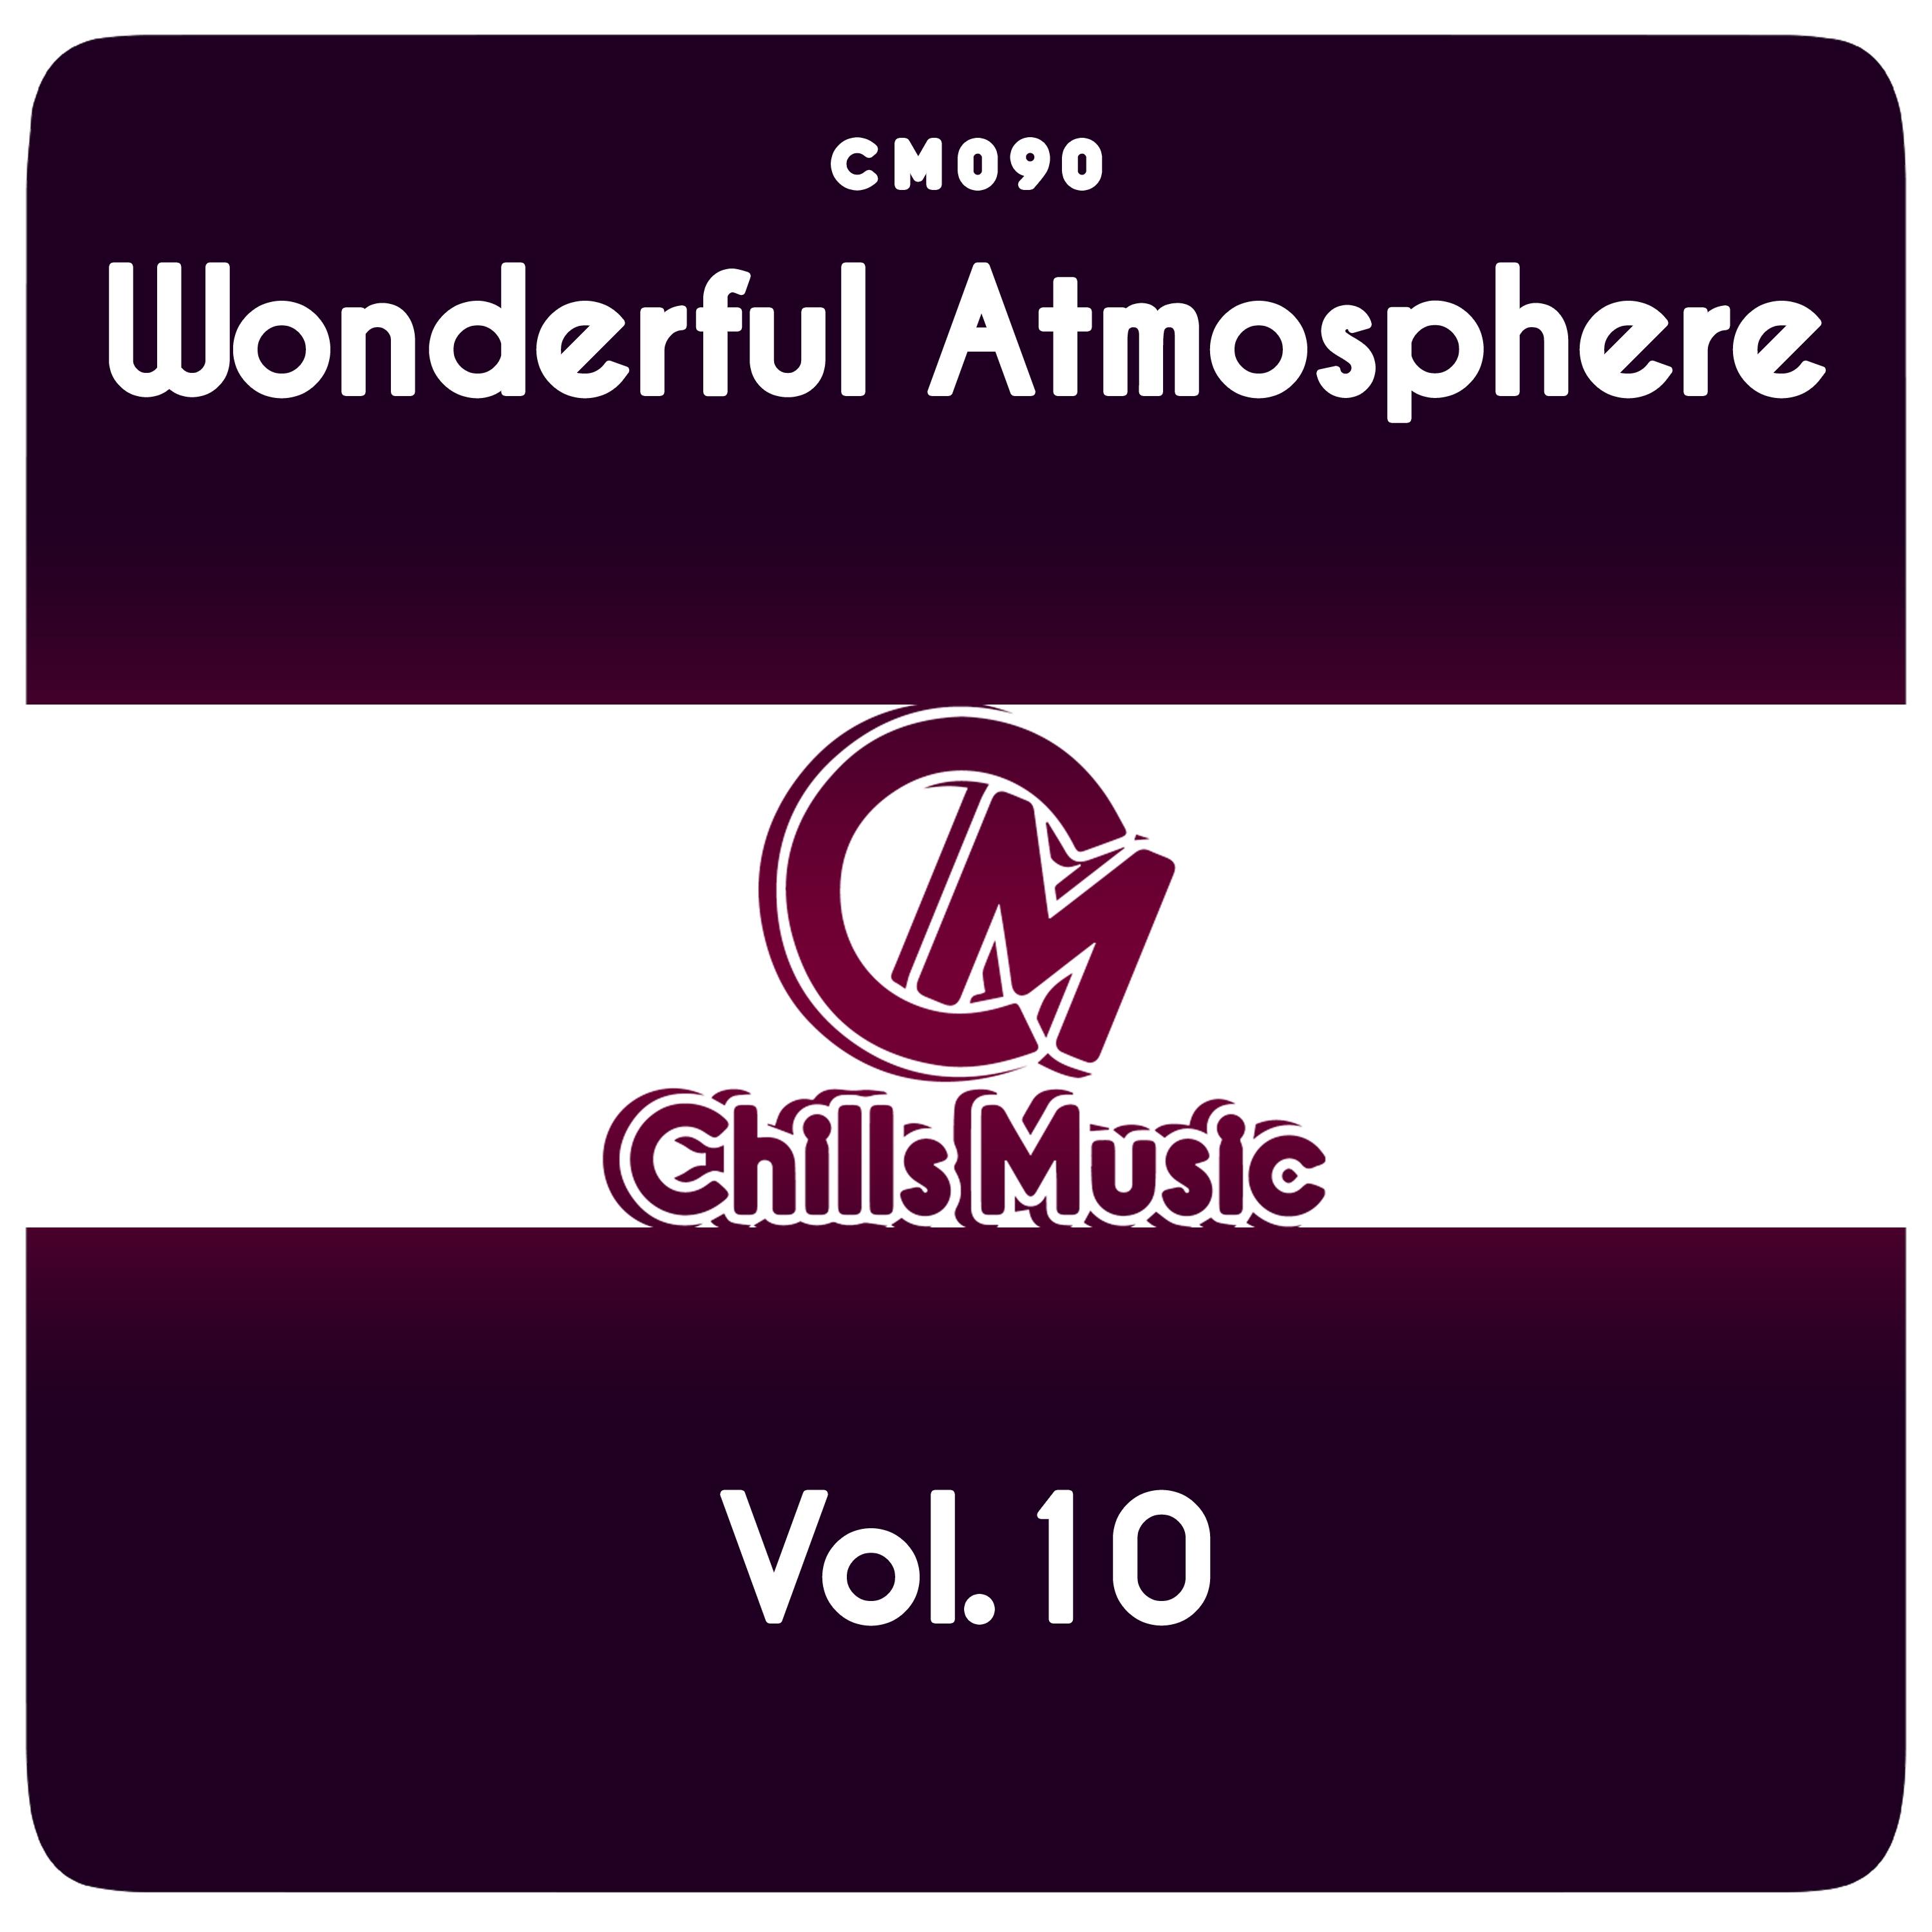 Wonderful Atmosphere Vol.10